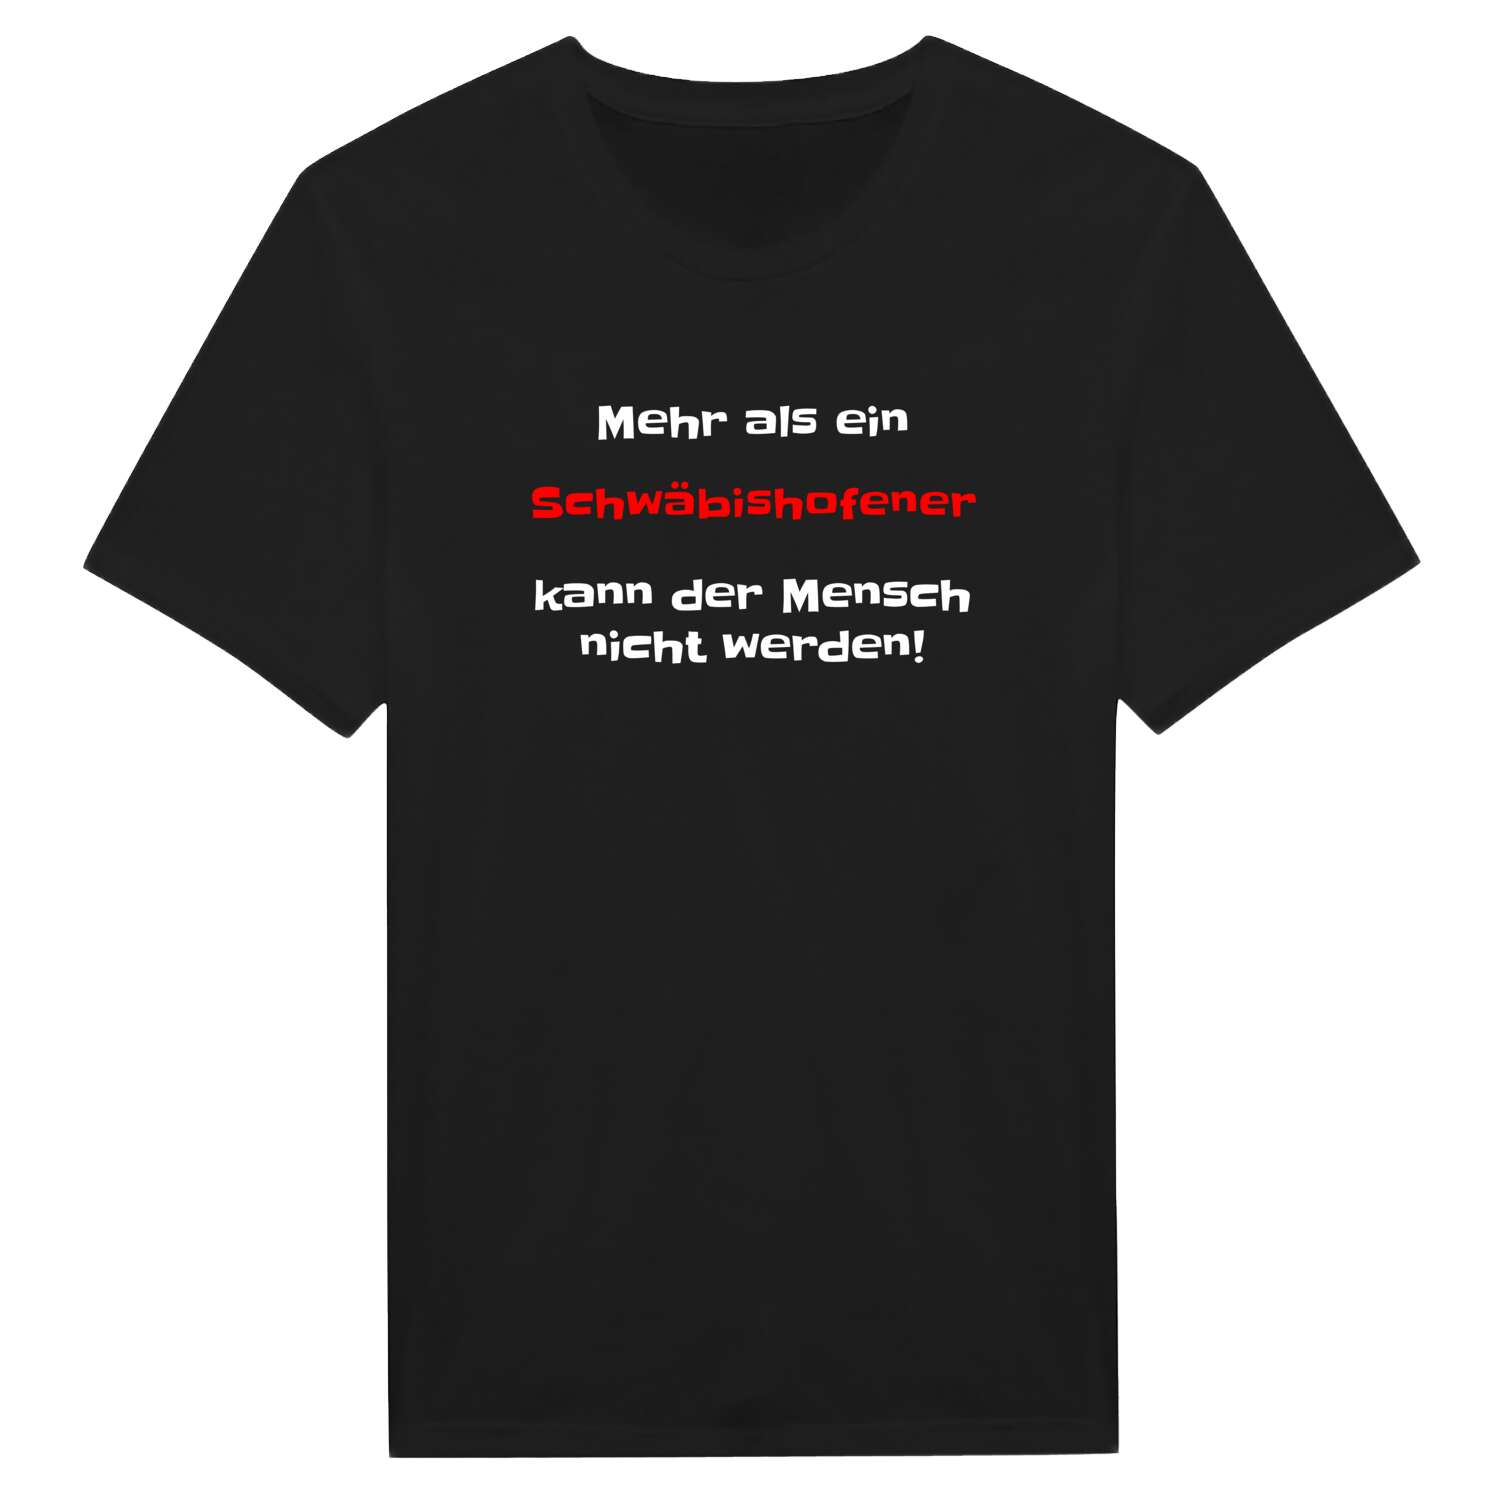 Schwäbishofen T-Shirt »Mehr als ein«